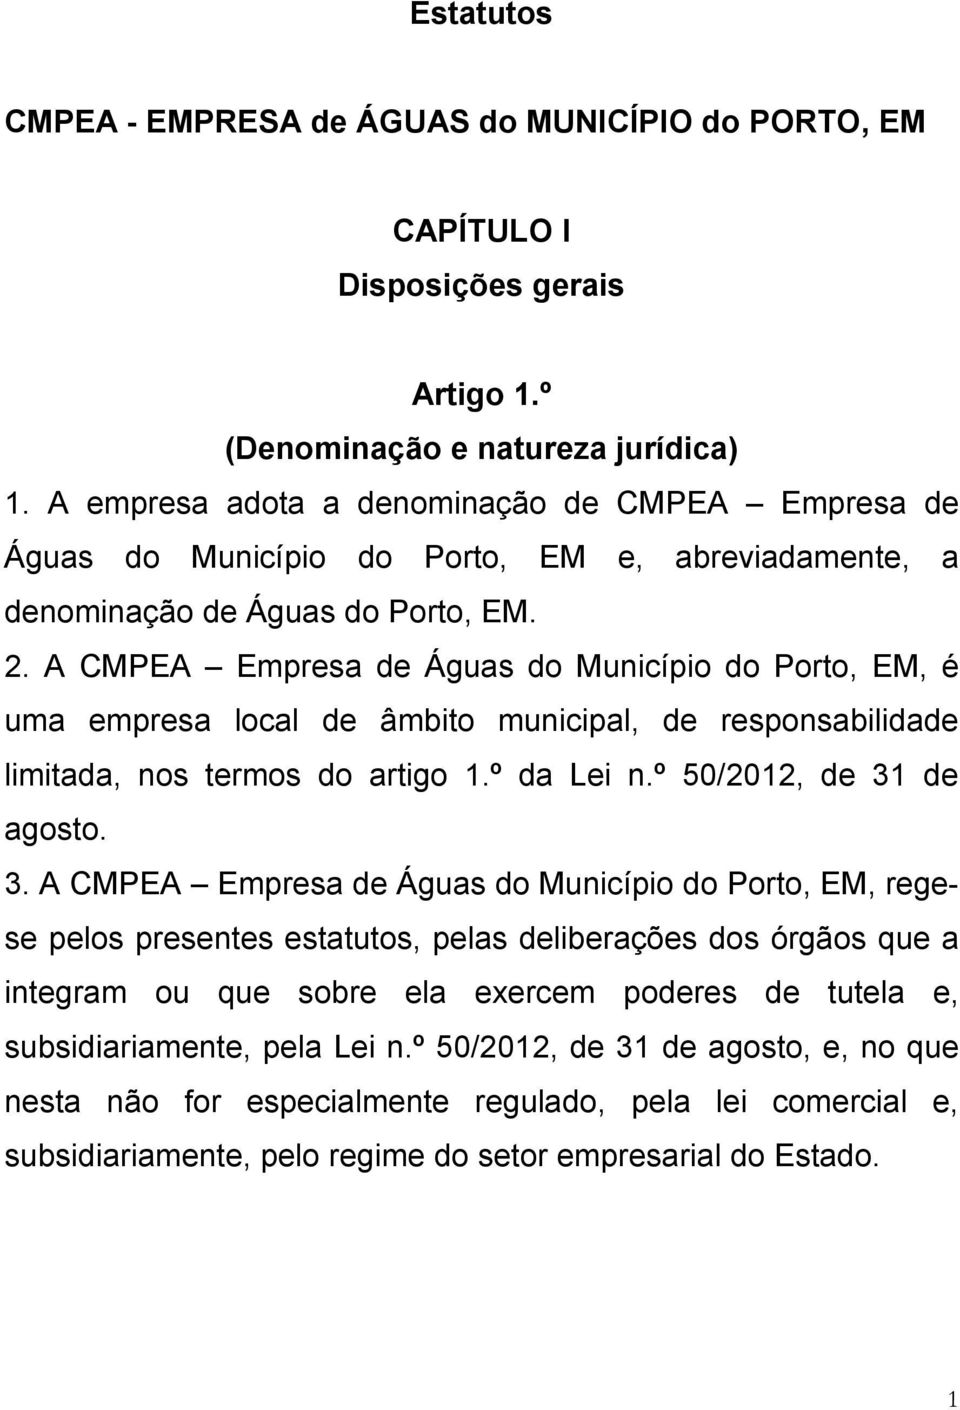 A CMPEA Empresa de Águas do Município do Porto, EM, é uma empresa local de âmbito municipal, de responsabilidade limitada, nos termos do artigo 1.º da Lei n.º 50/2012, de 31